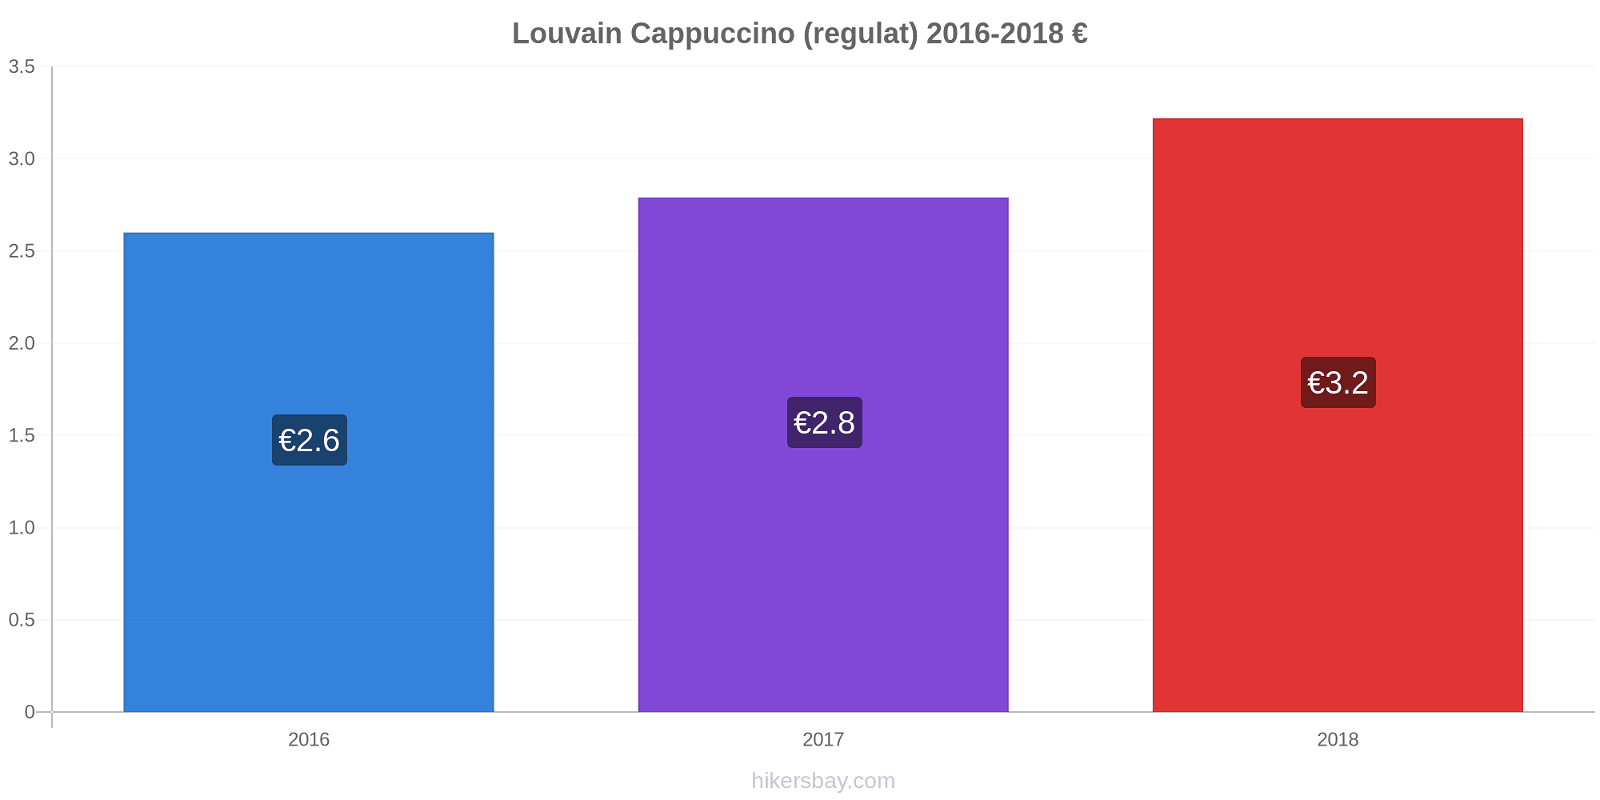 Louvain modificări de preț Cappuccino (regulat) hikersbay.com